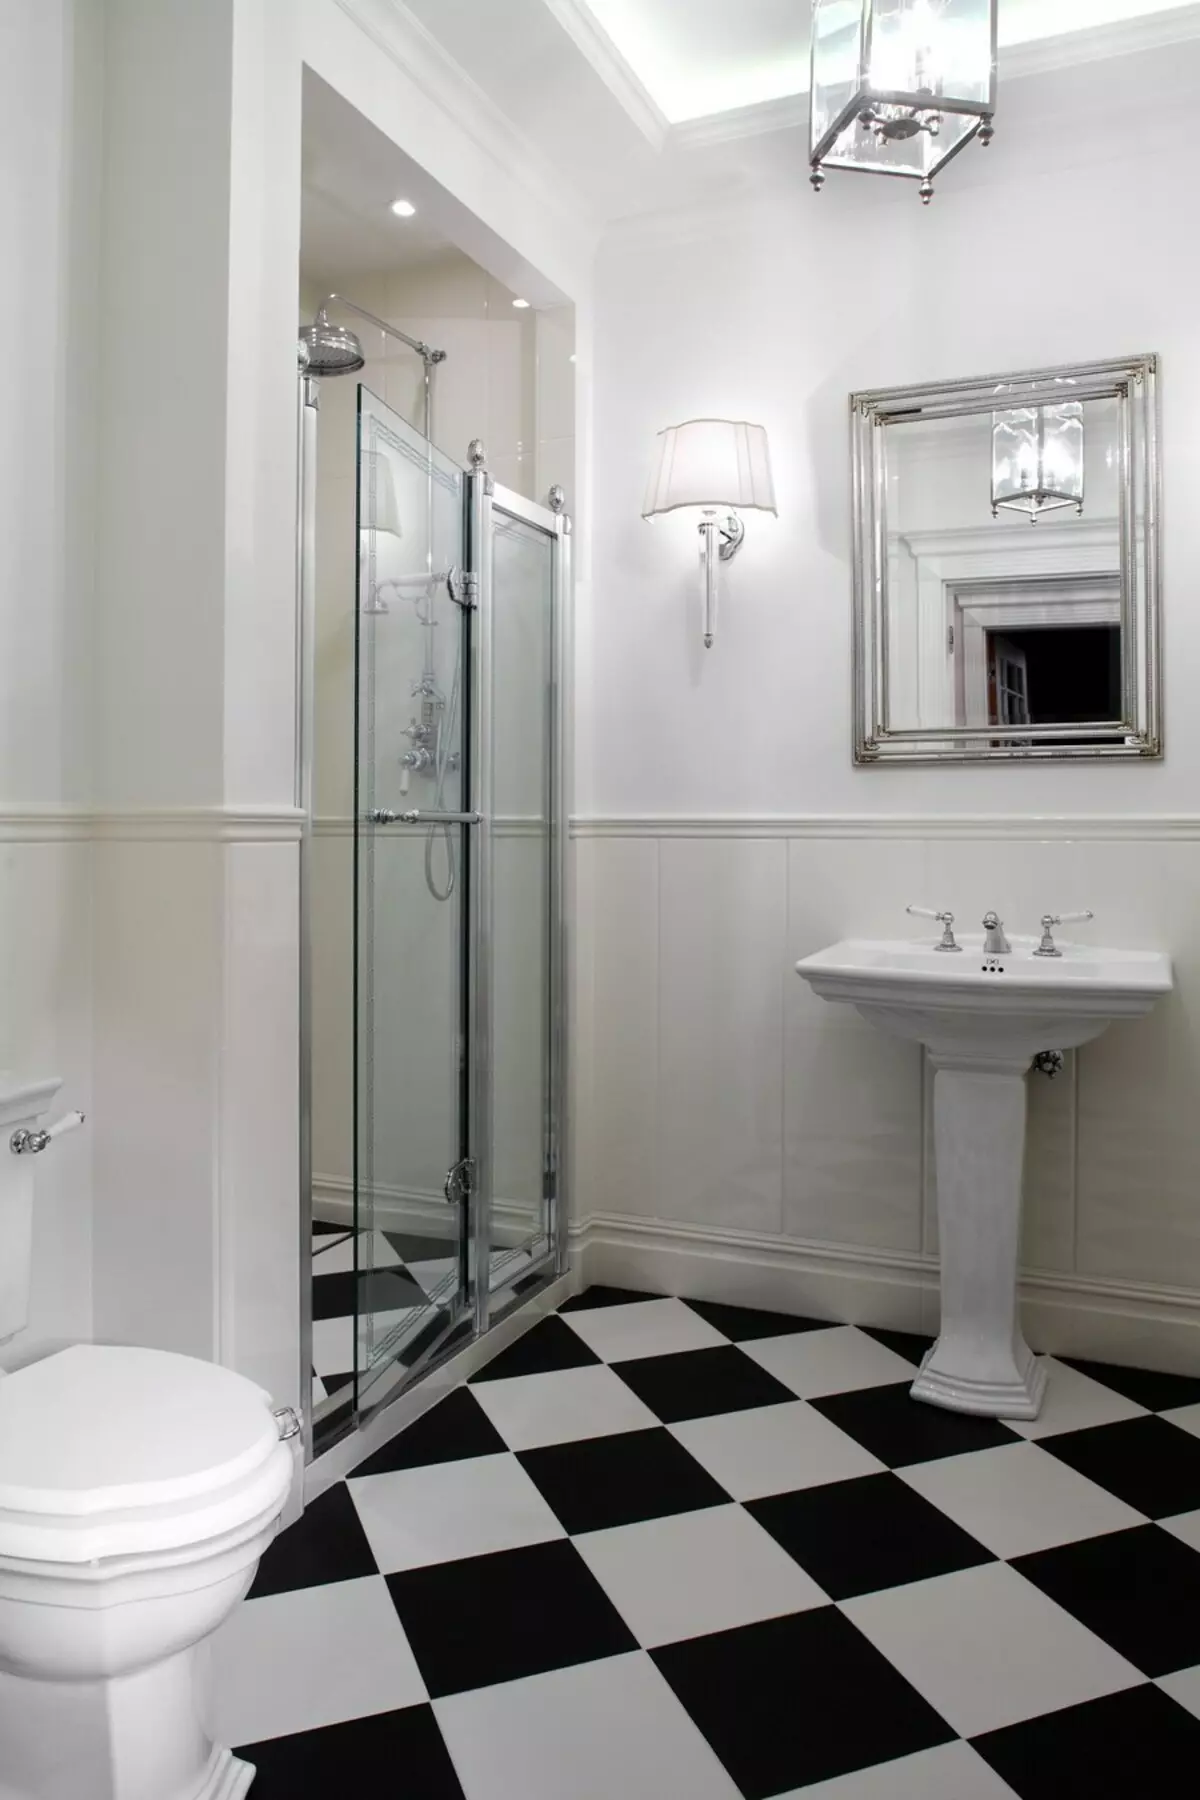 浴室没有淋浴的淋浴（57张照片）：私人住宅和公寓内的浴室的设计和装饰有灵魂场景 21400_52